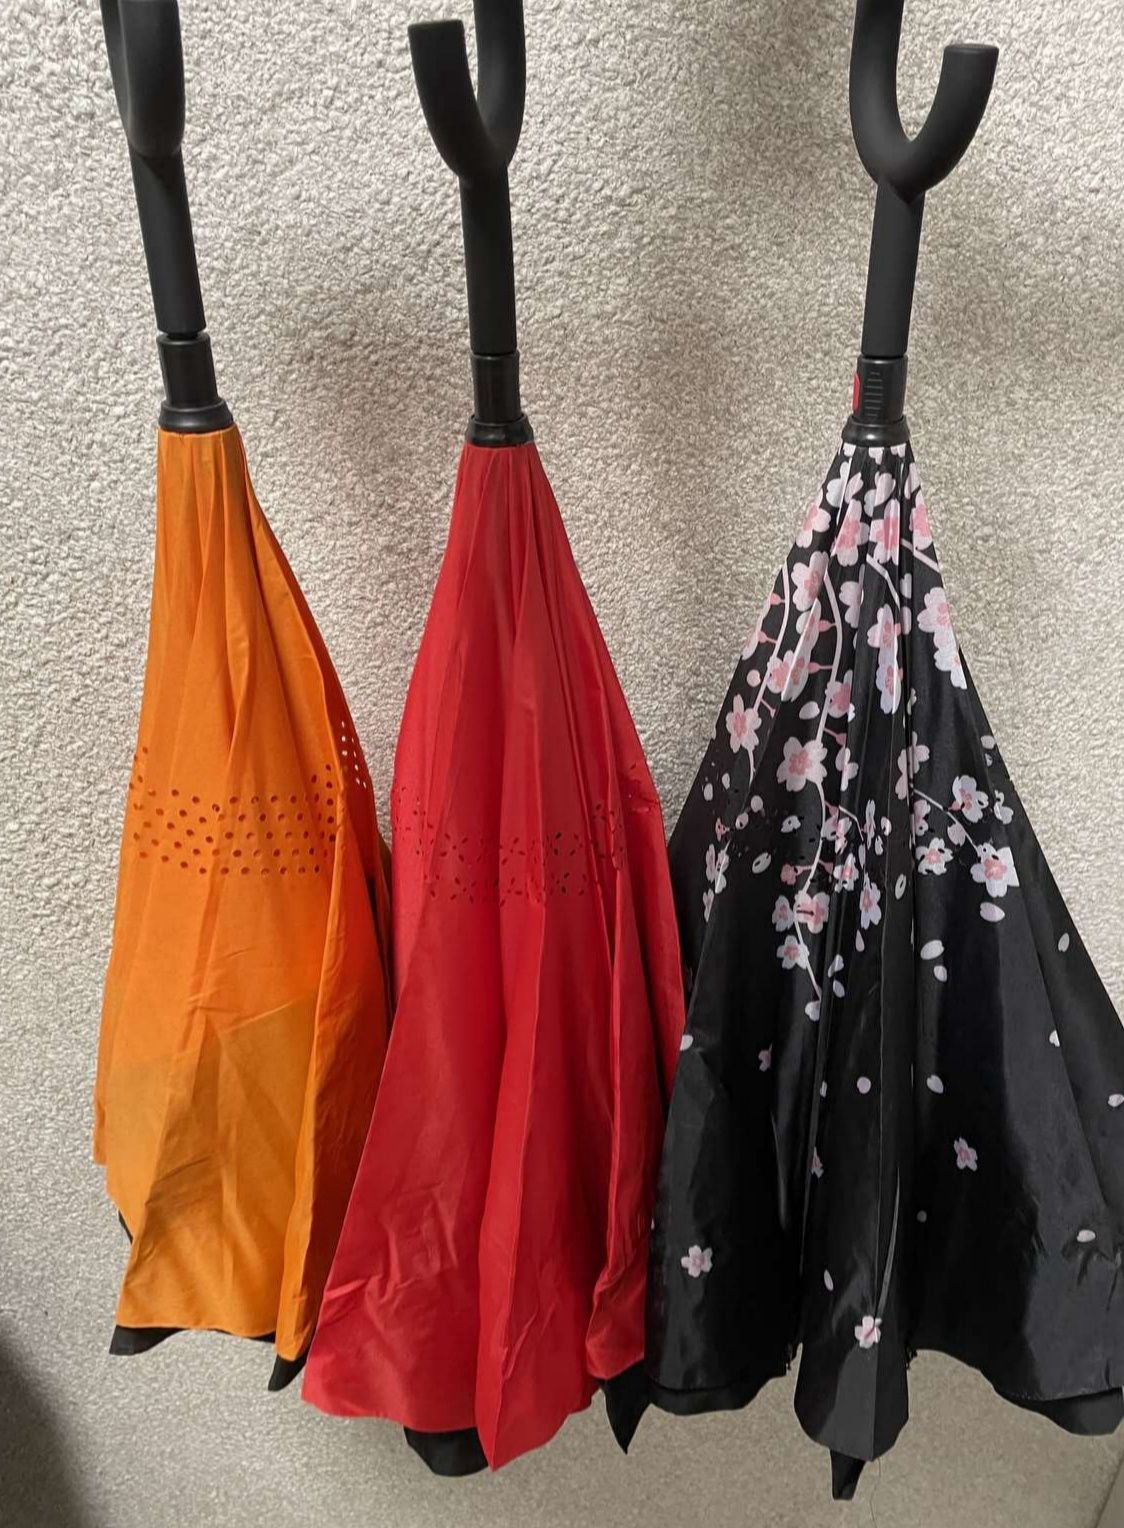 Зонтик зонт від доща обратного сложения umbrella